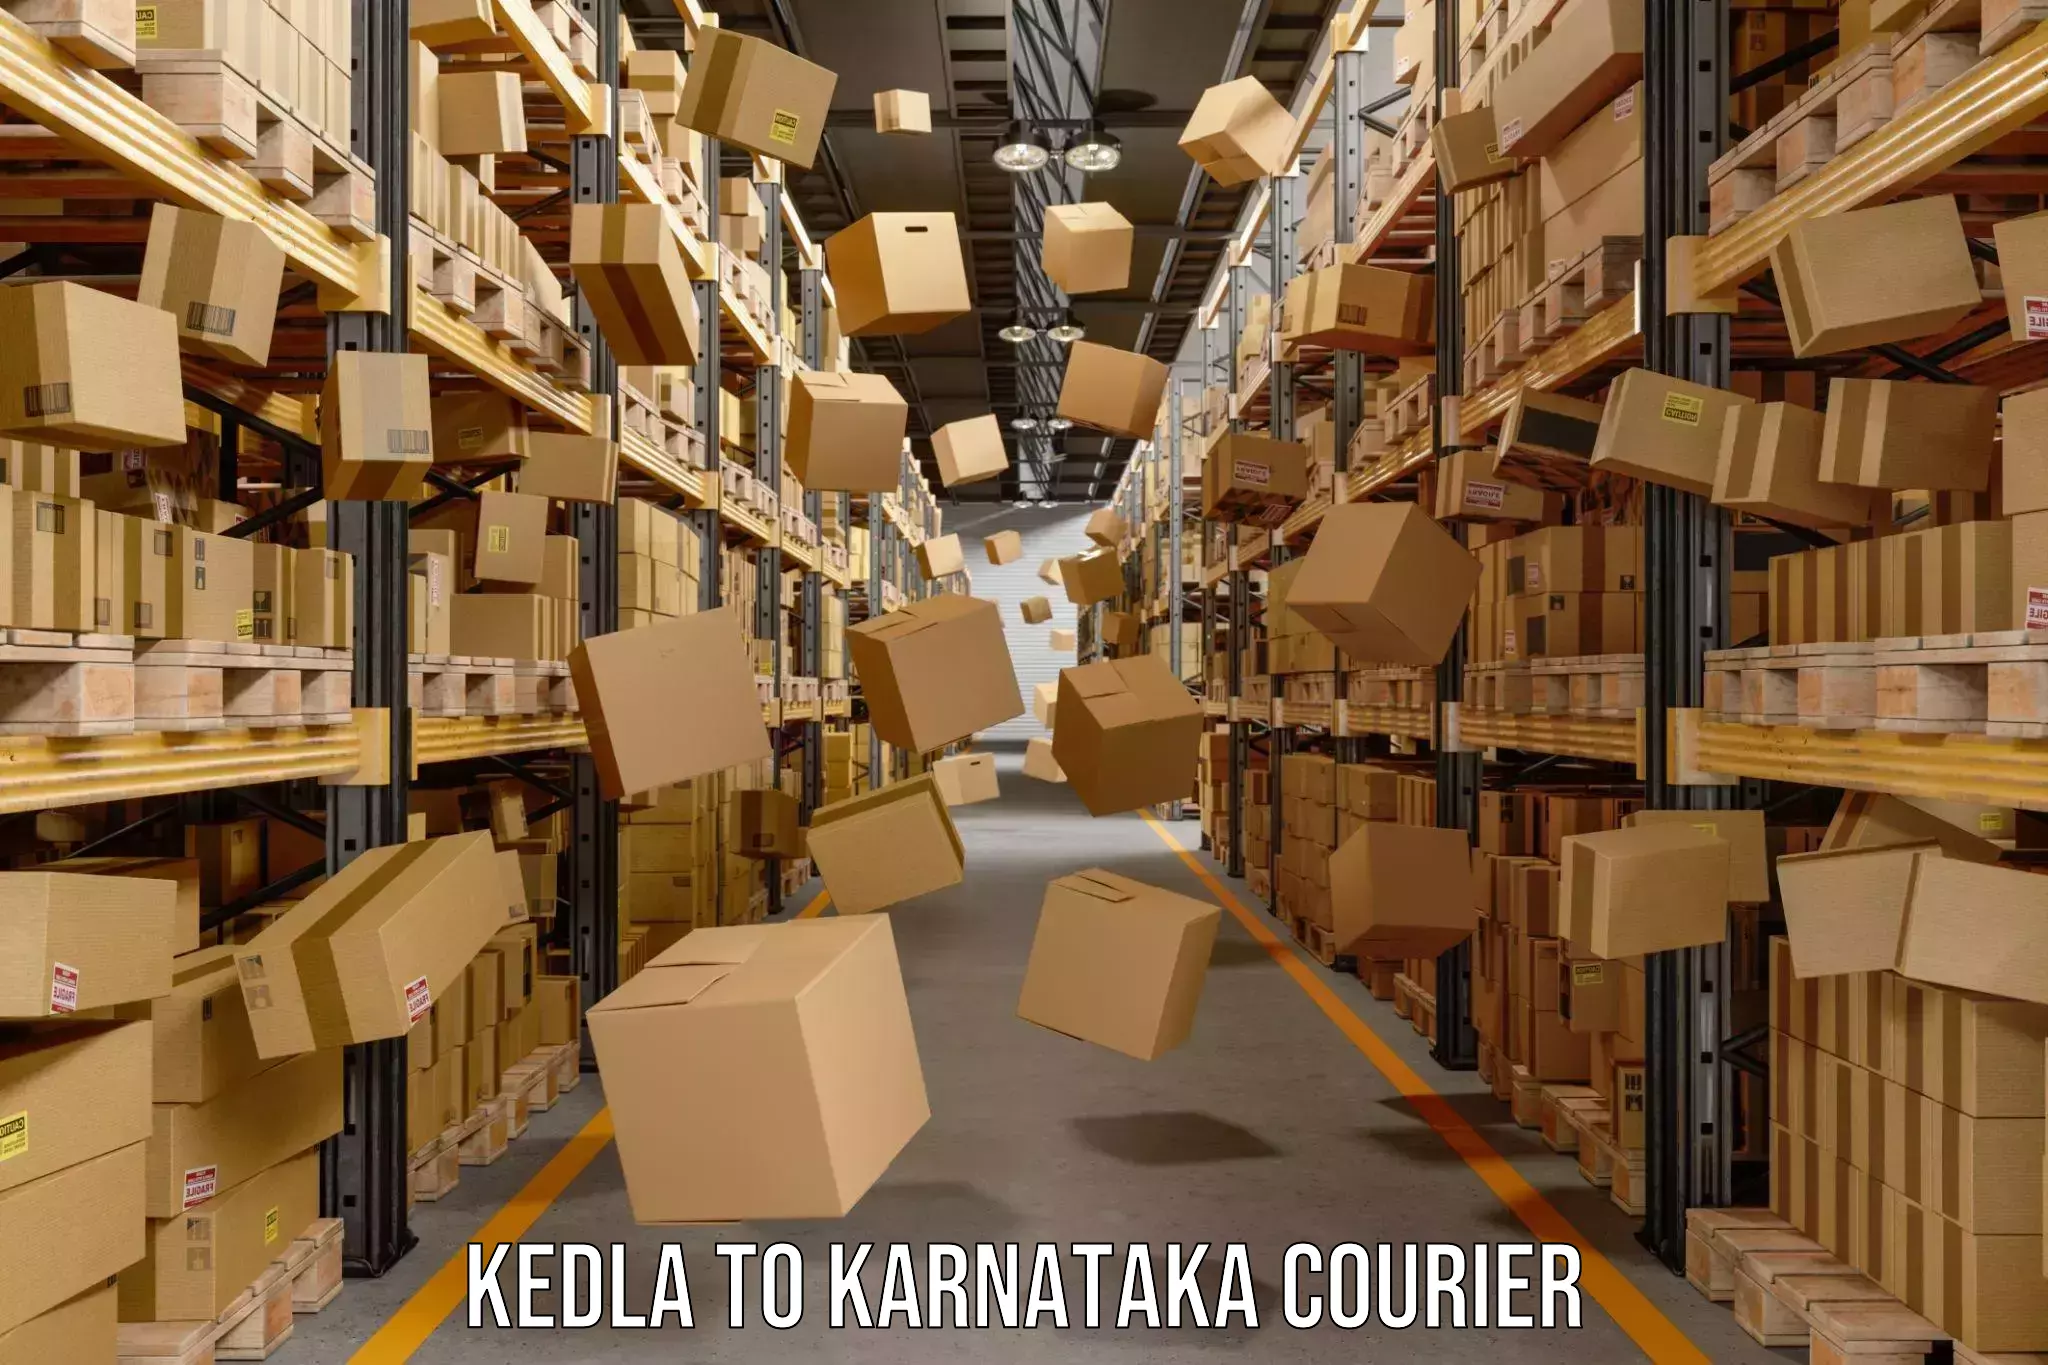 Global parcel delivery Kedla to Karnataka